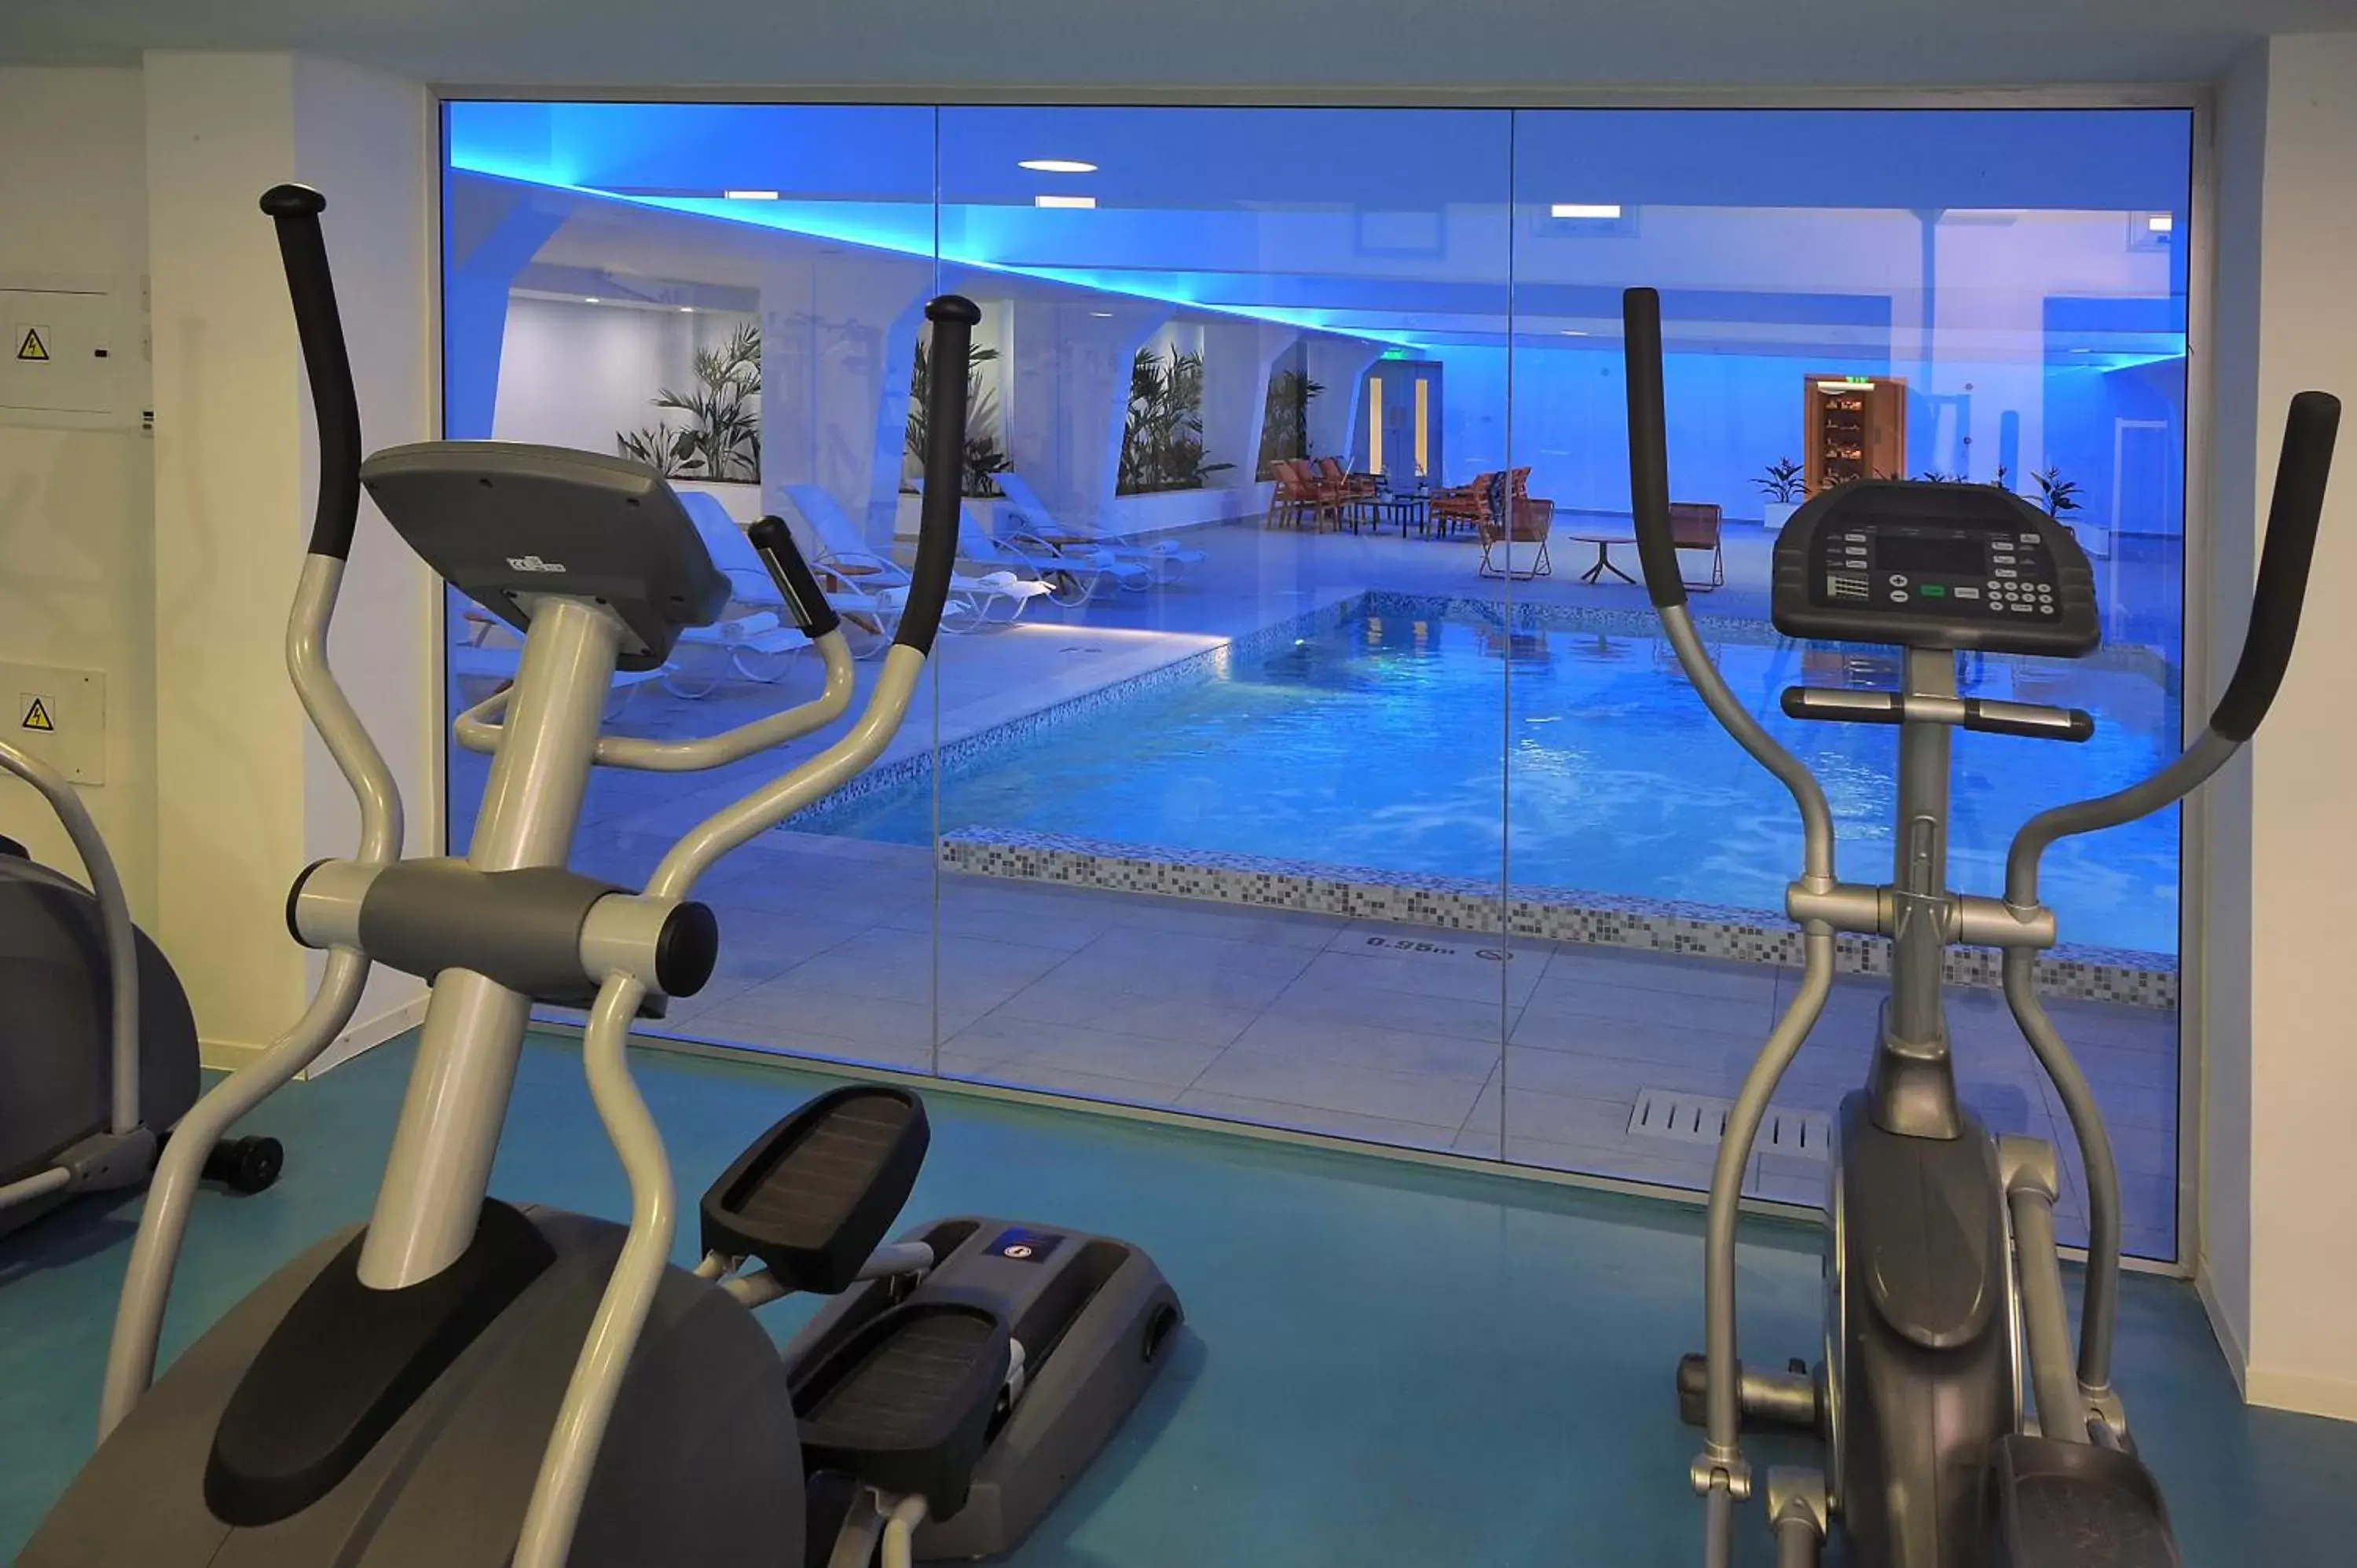 Fitness centre/facilities, Fitness Center/Facilities in Nestor Hotel